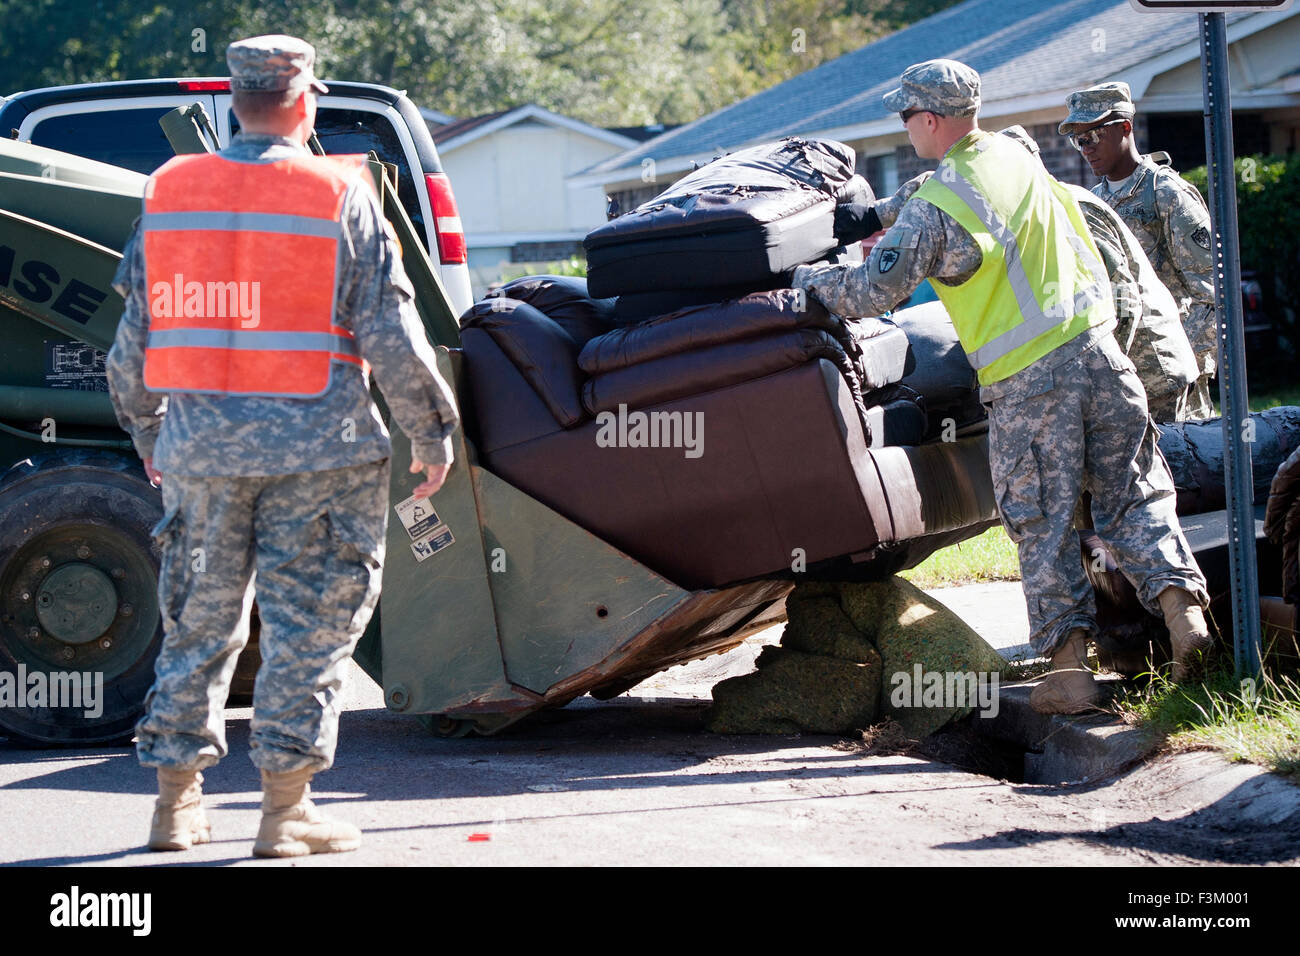 La Caroline du Sud, USA. 8 octobre, 2015. Caroline du Sud, les soldats de la Garde nationale d'armée aider au nettoyage à la suite d'inondations massives, le 8 octobre 2015 à Summerville, Caroline du Sud. Banque D'Images